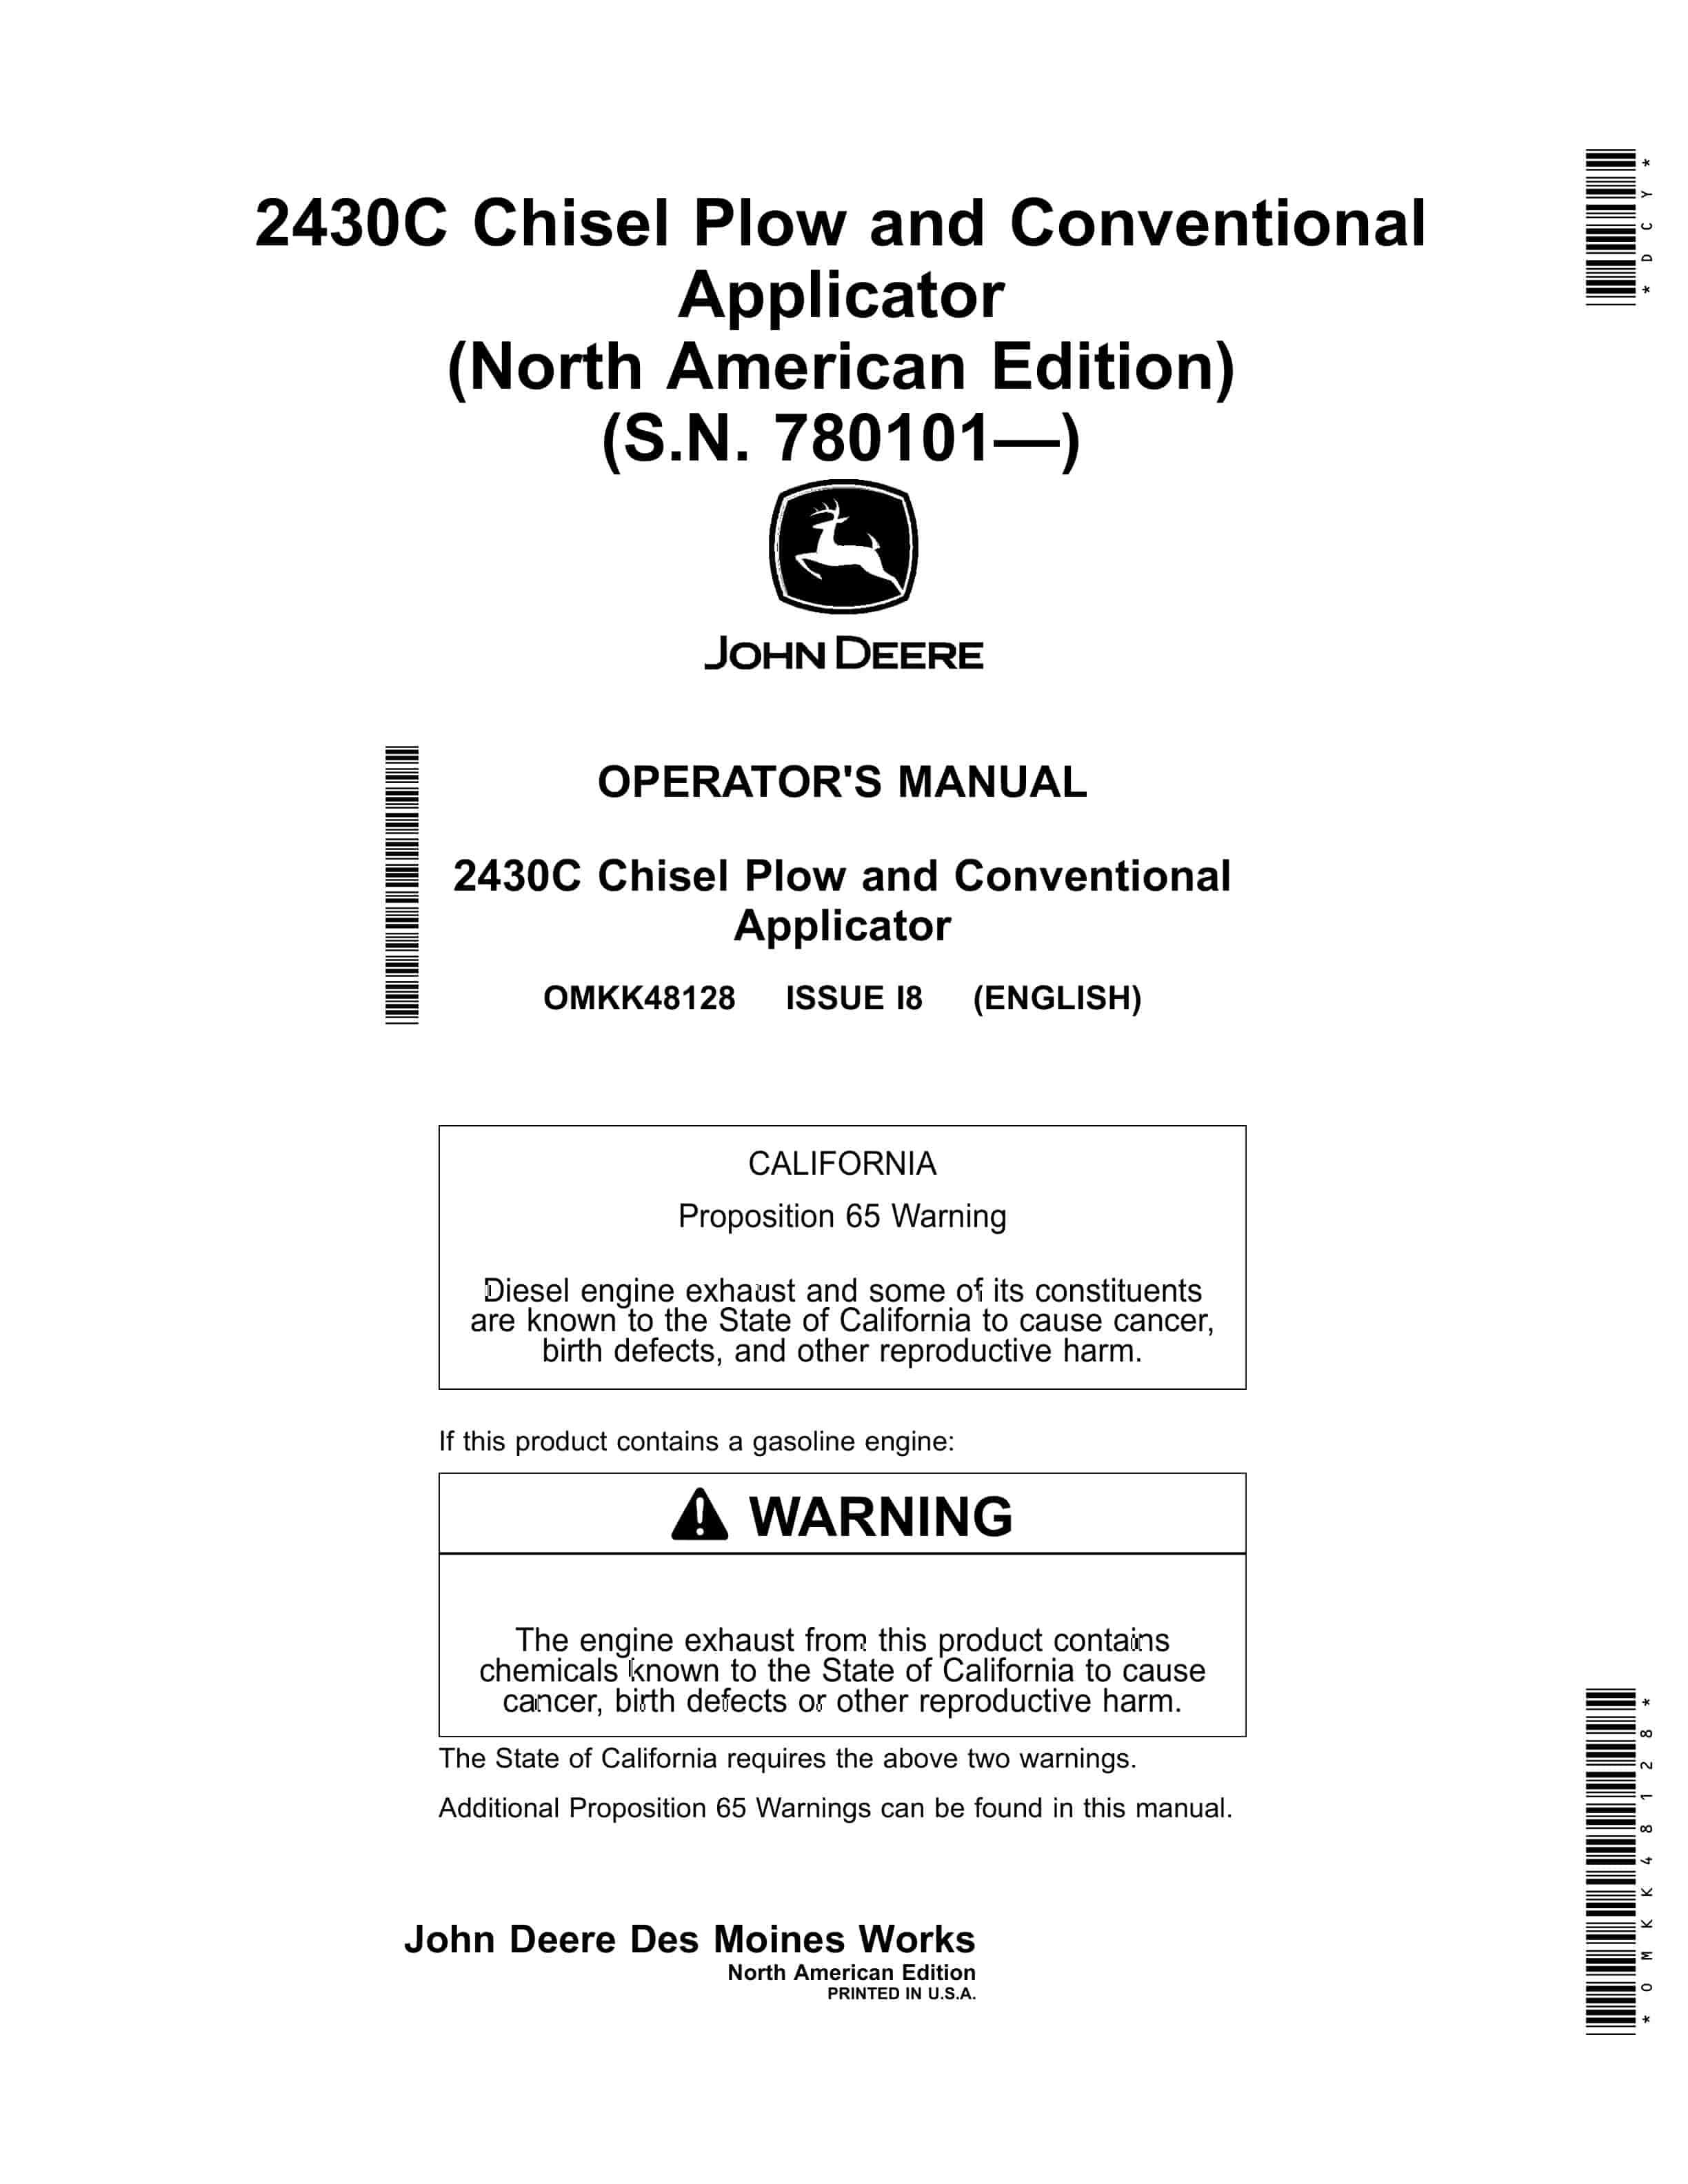 John Deere Conventional Applicator and 2430C Chisel Plow Operator Manual OMKK48128 1